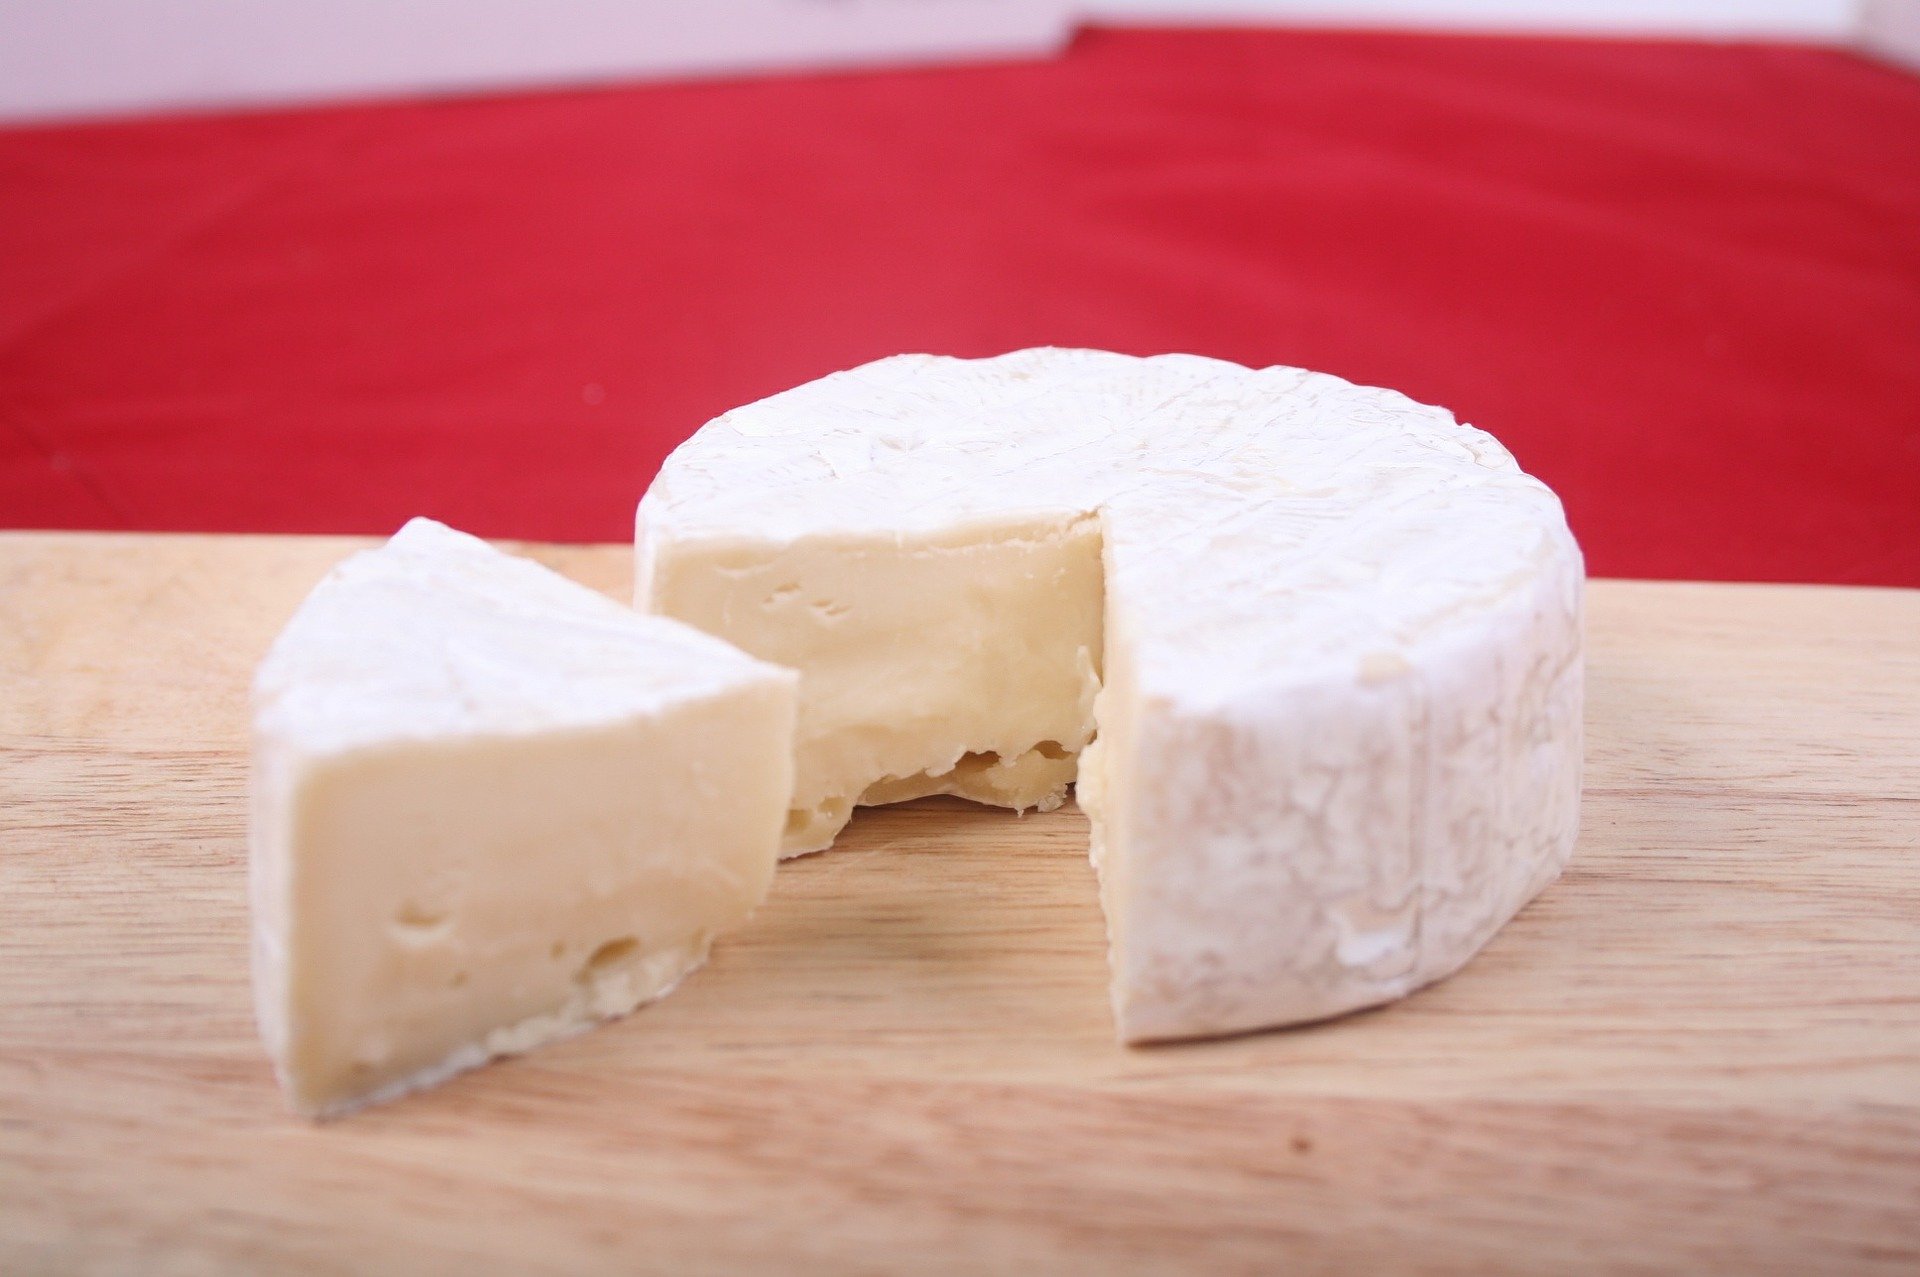 Suspenden ventas de marcas de queso y yogurt por incumplir normas